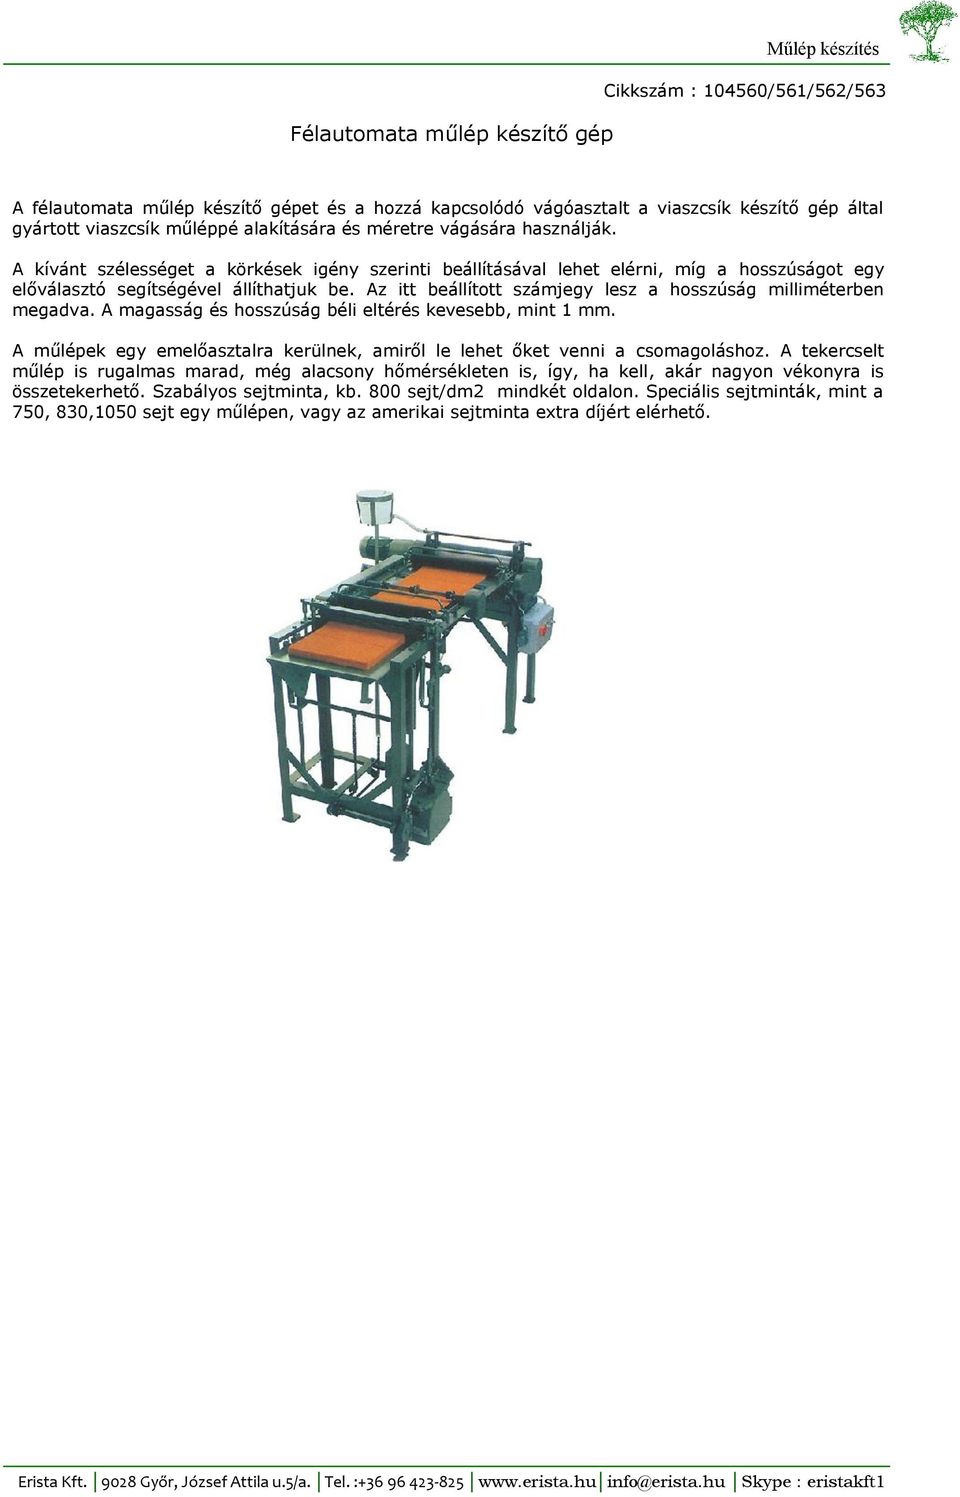 Motoros műlép készítő készülék - PDF Ingyenes letöltés